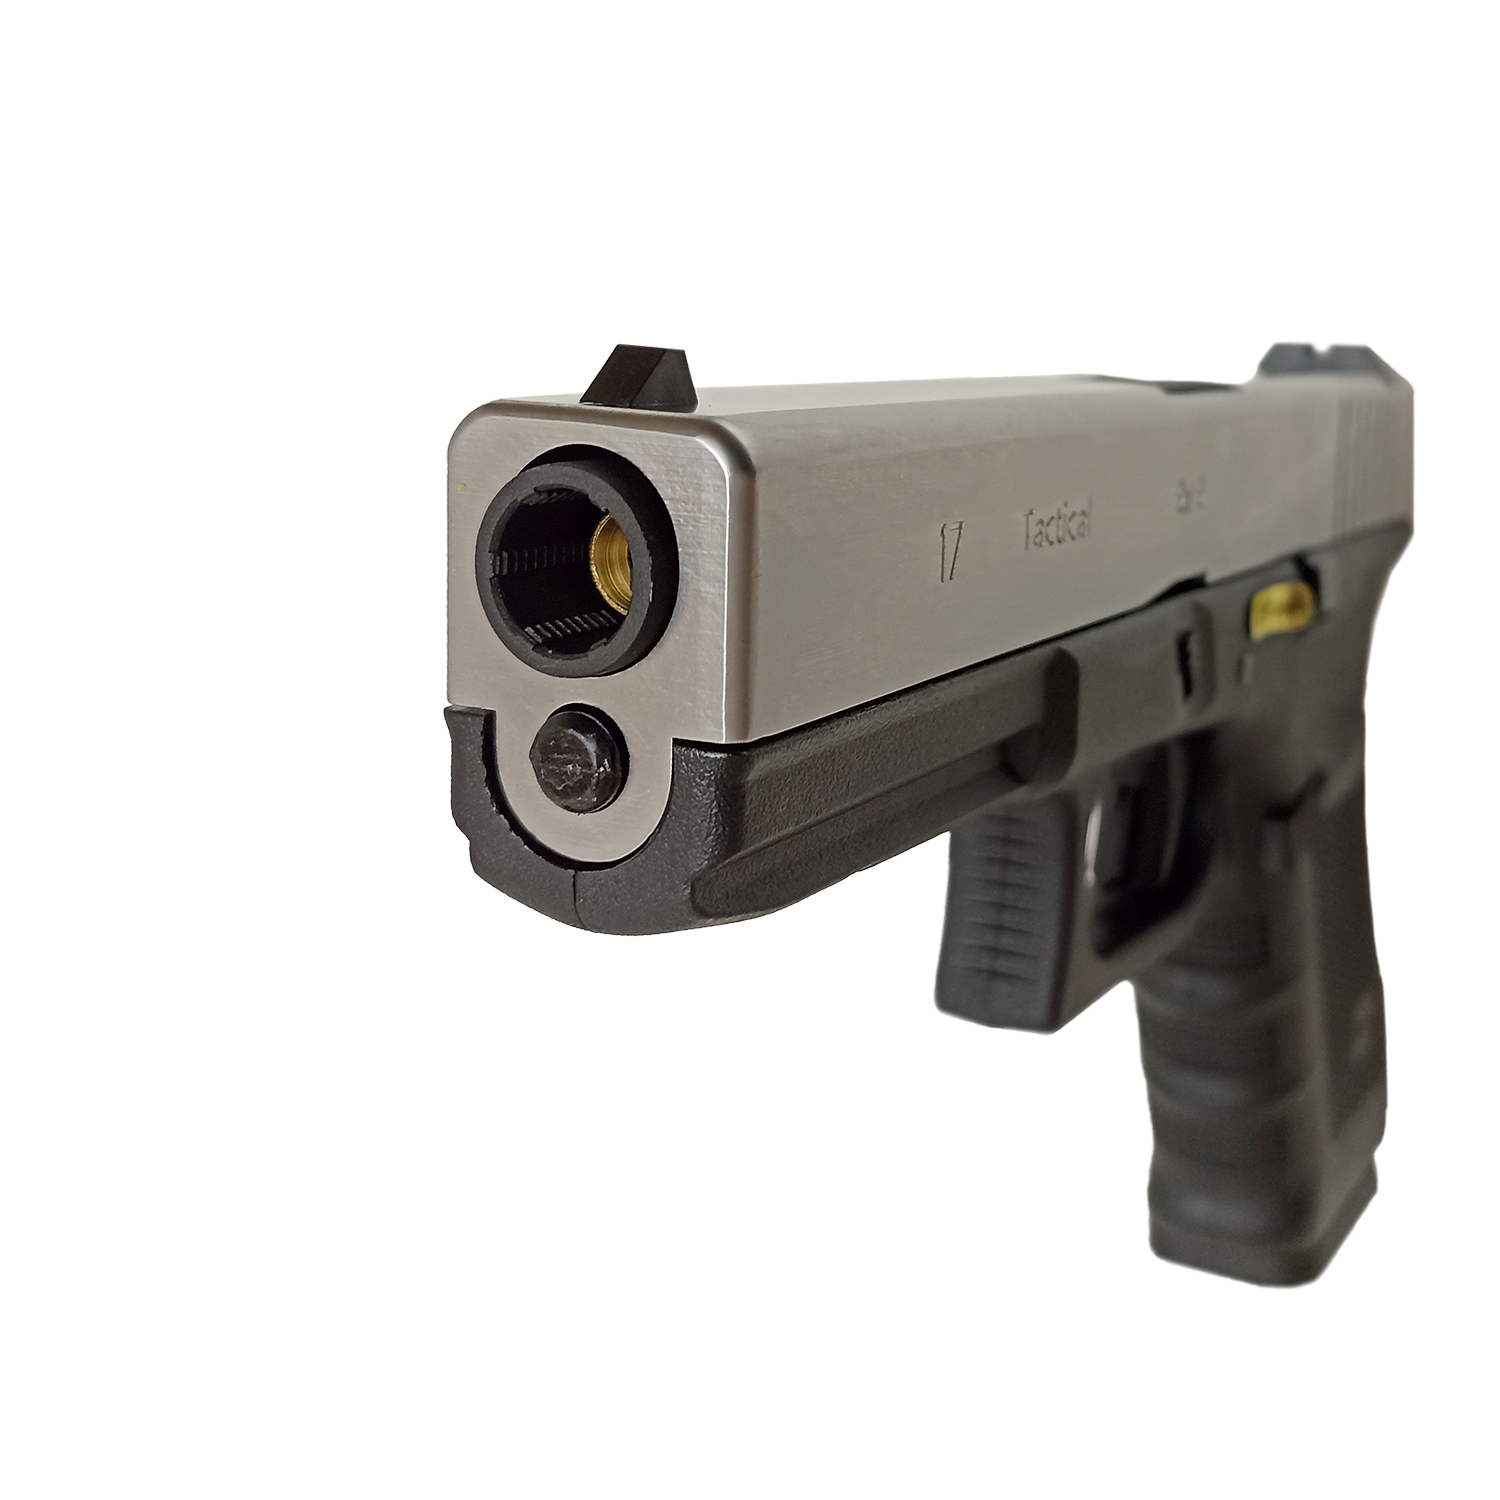 Пистолет страйкбольный (WE) Glock-17 gen4, металл слайд, хром, сменные накладки, WE-G001B-SV